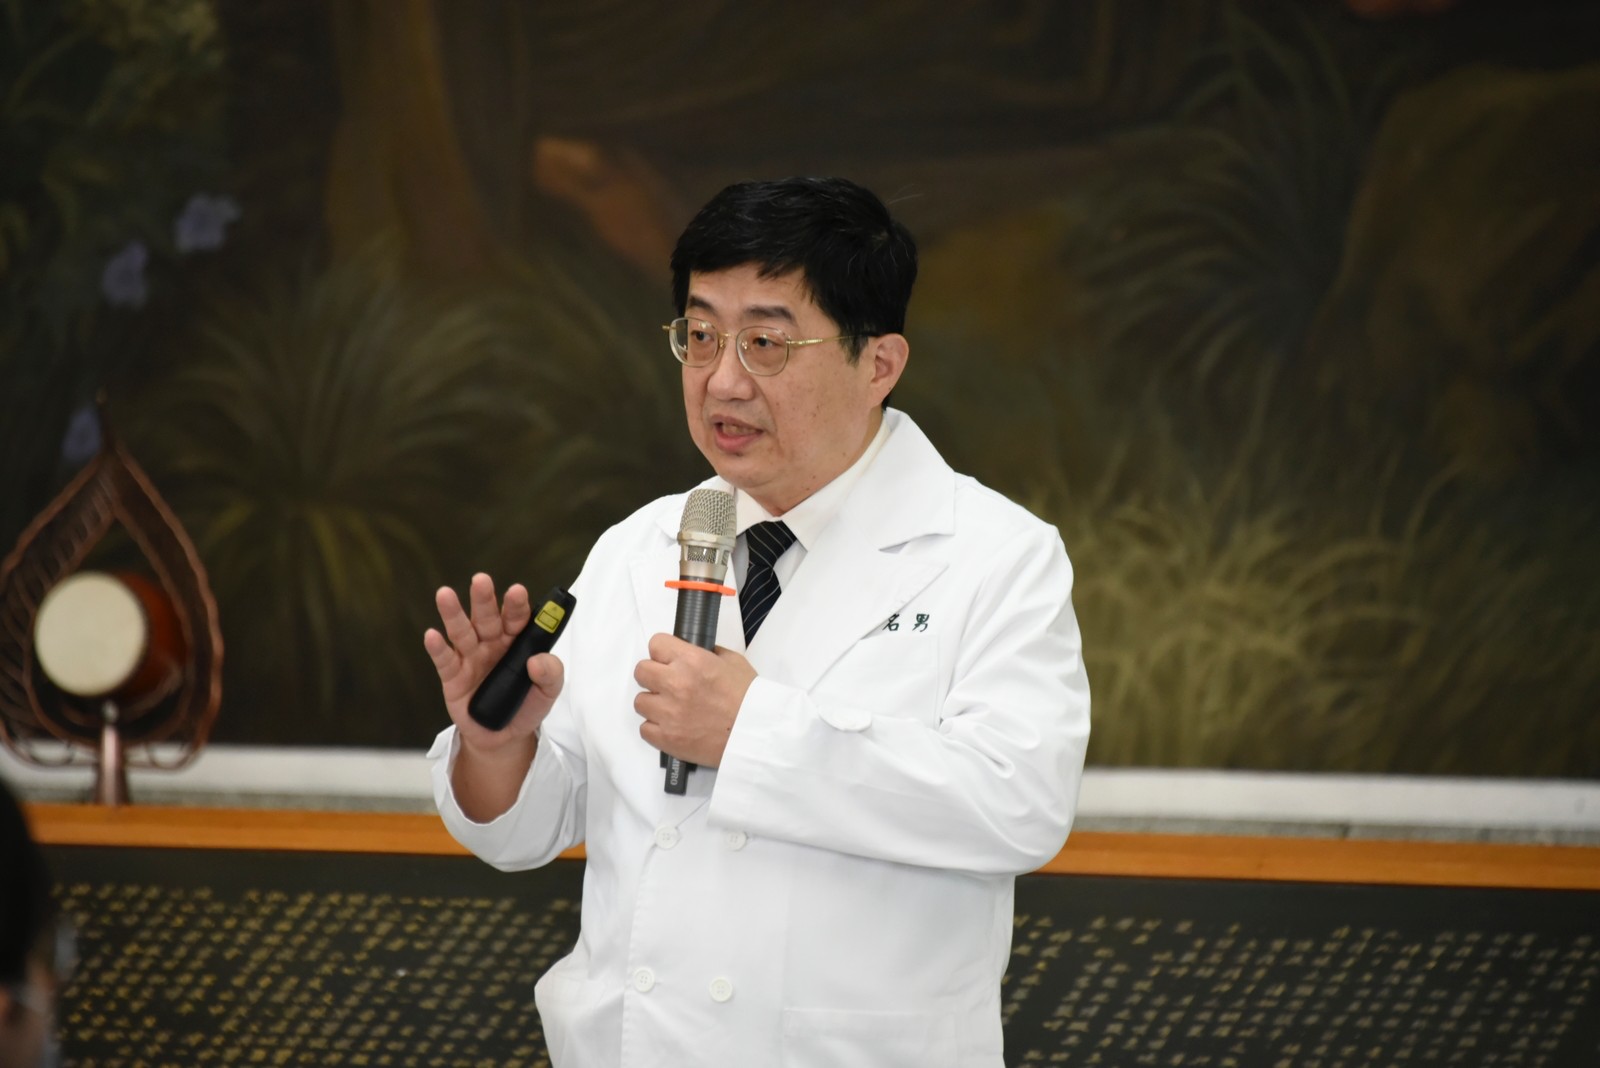 林名男副院長表示，2050淨零碳排不是夢，希望大家一起來盡世界公民的責任，在照顧病人之餘，也能照顧地球的健康。